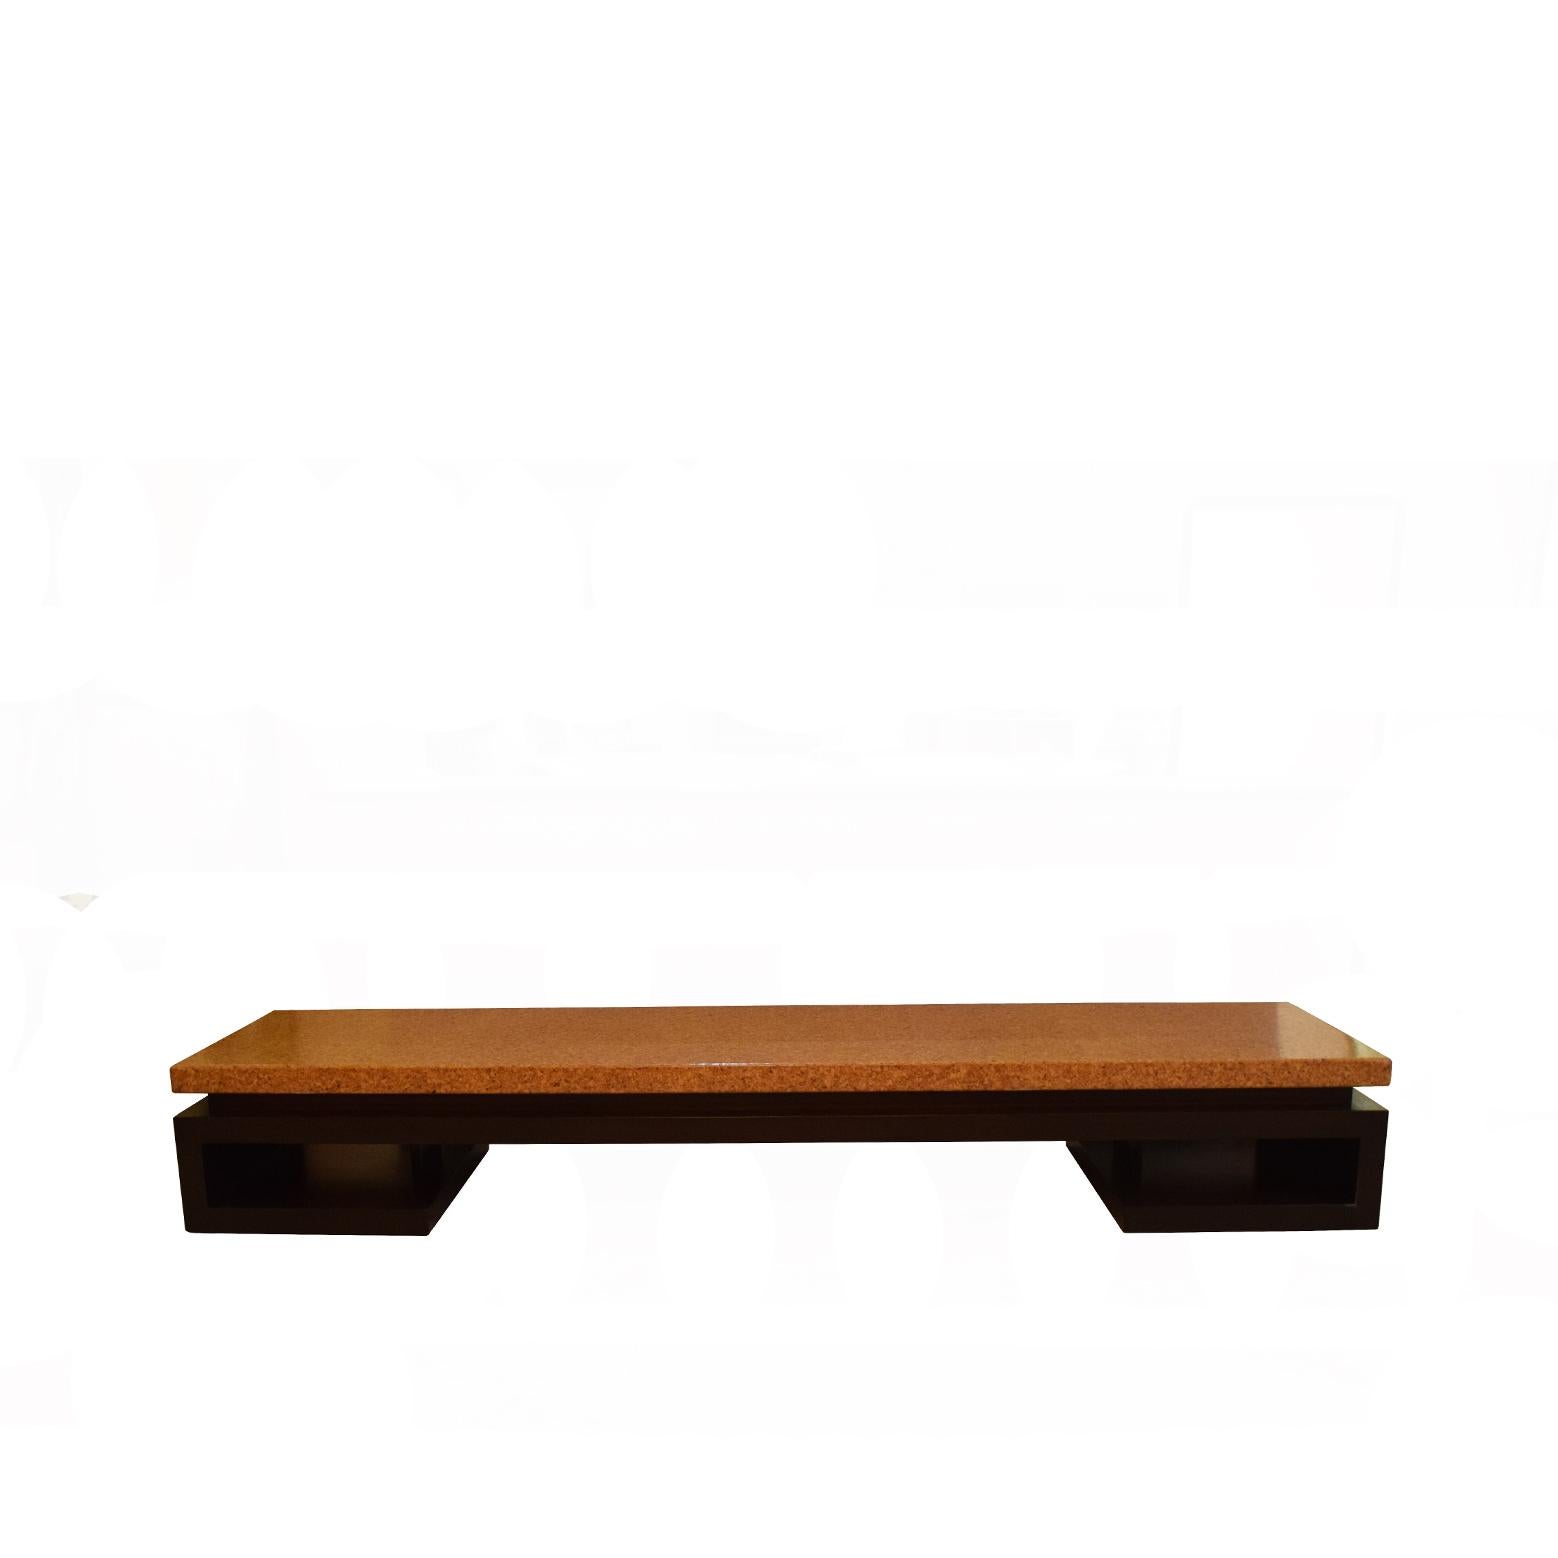 Paul Frankl niedrigen Kork Tisch / Bank 1940er Jahre hergestellt von Johnson Furniture Co. vollständig restauriert.